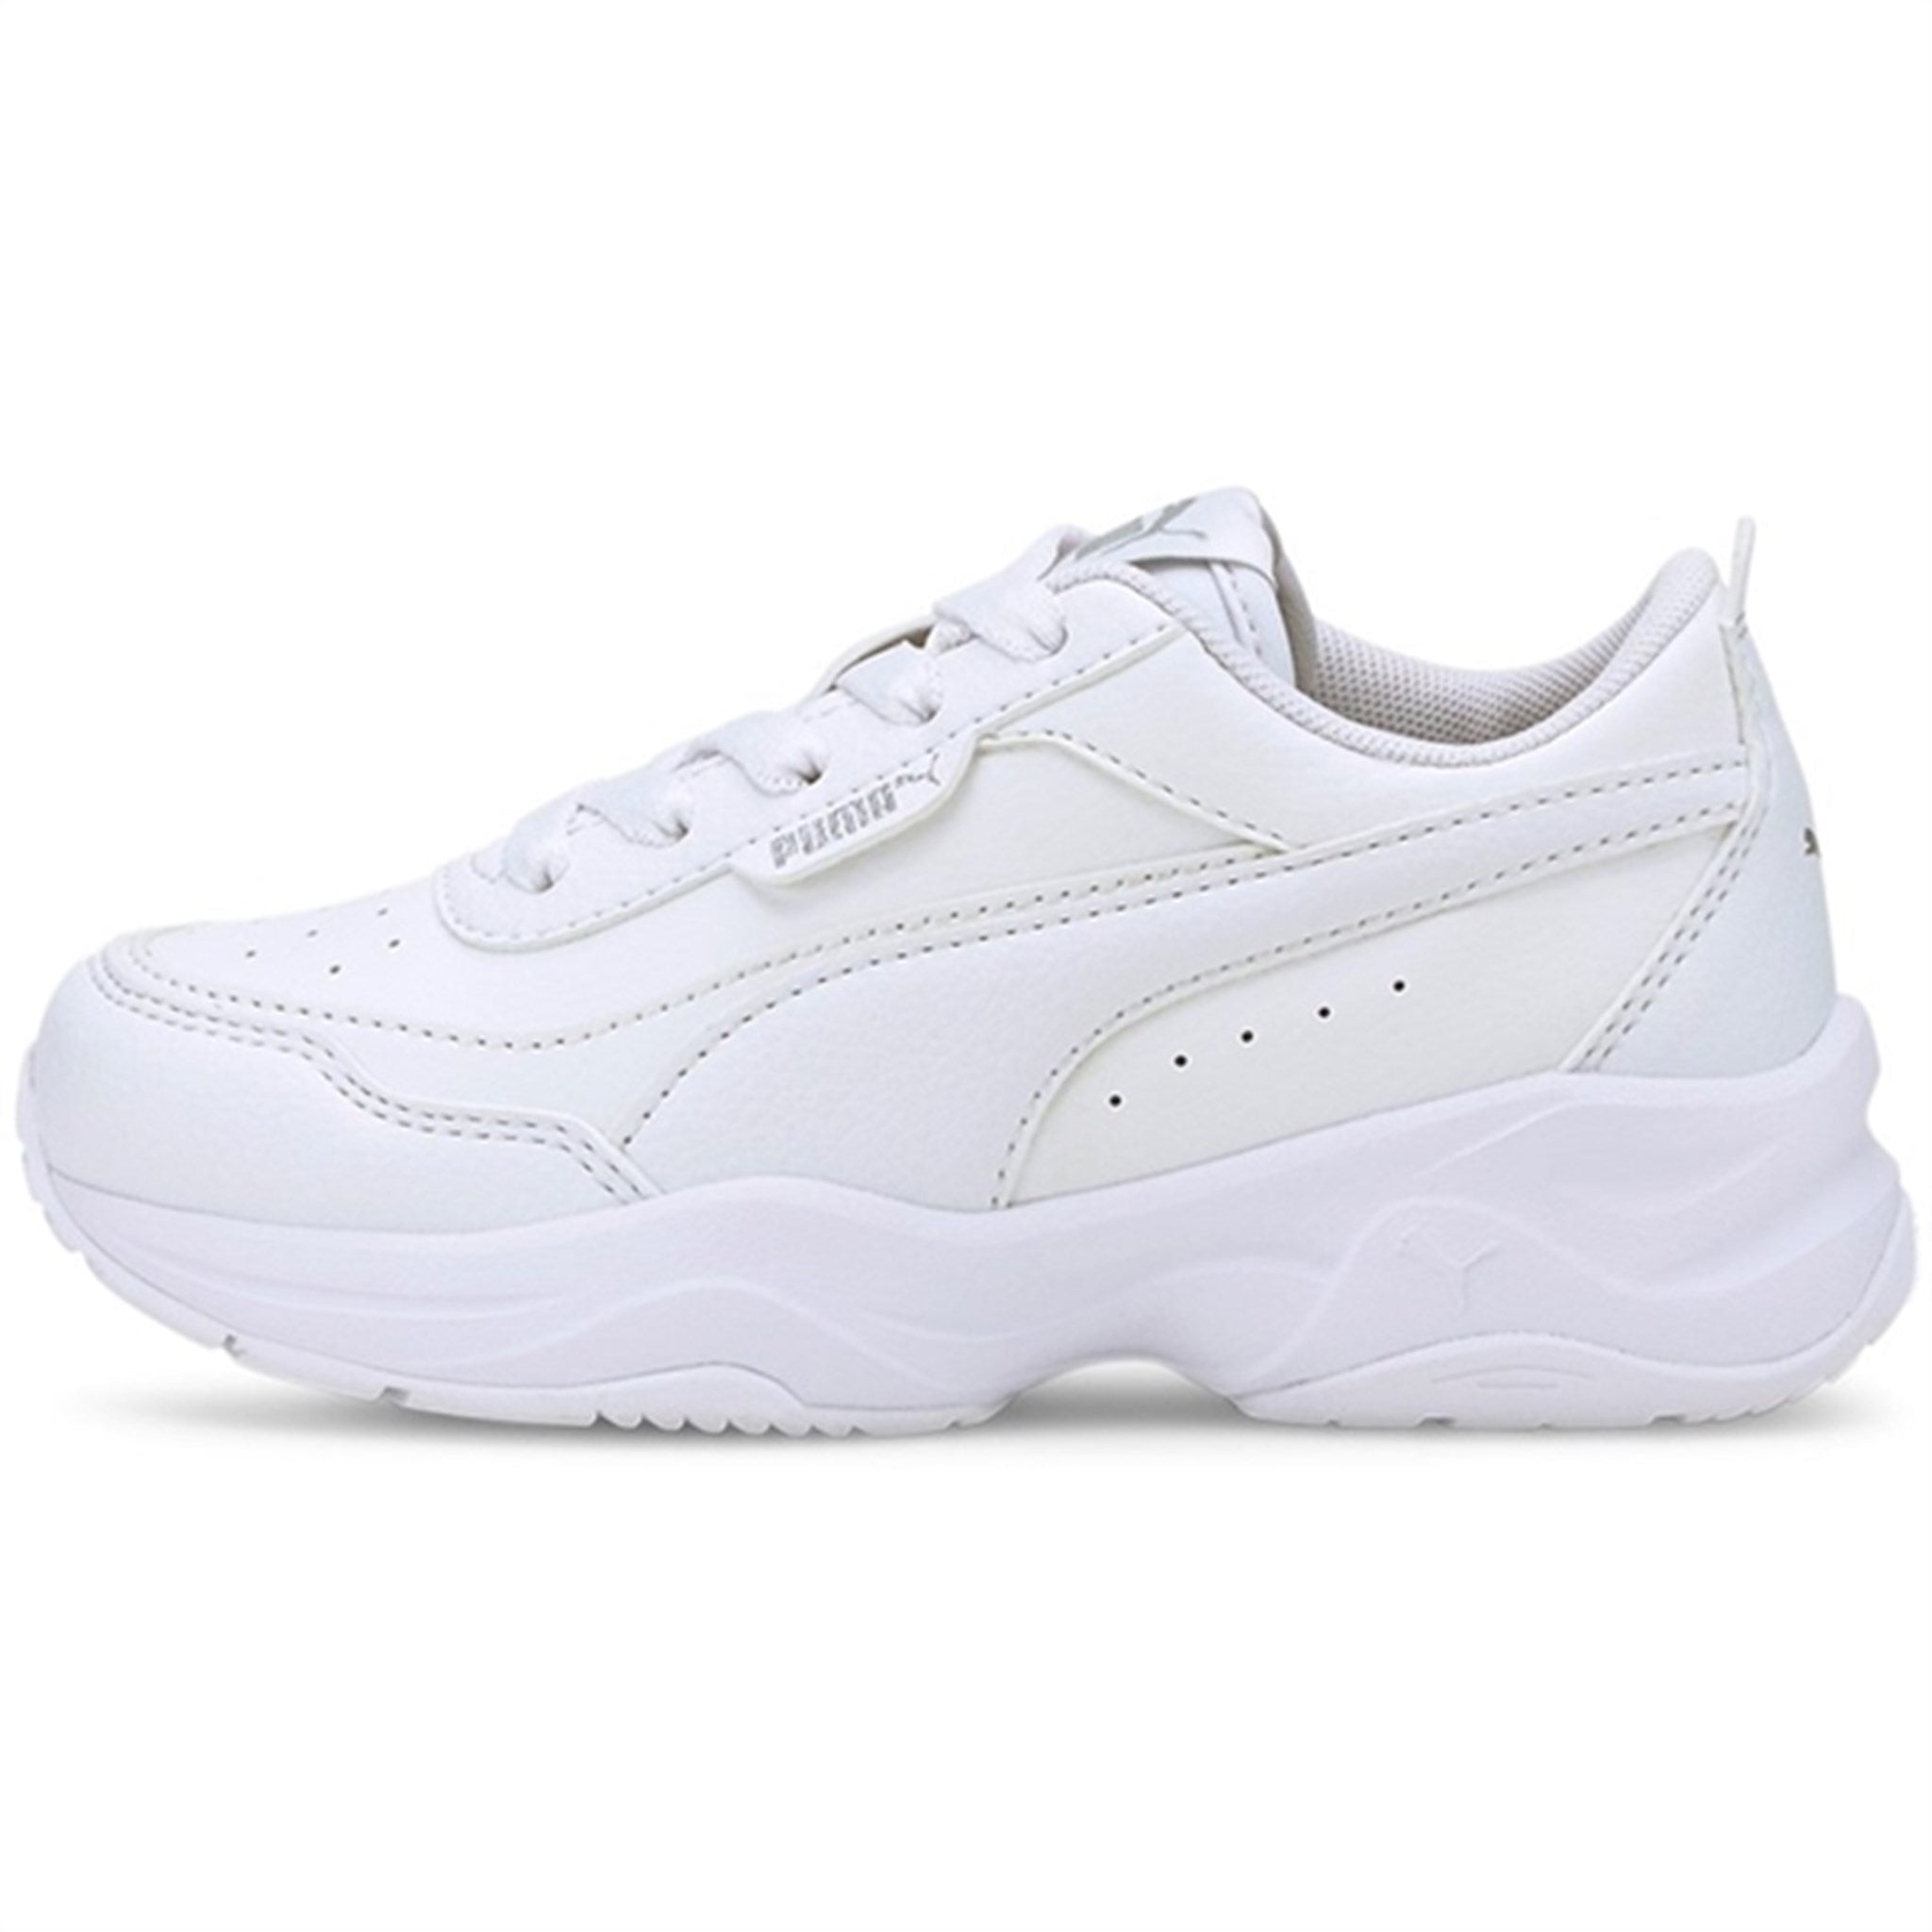 Puma Cilia Mode PS White-Silver-Gray Violet Sneakers